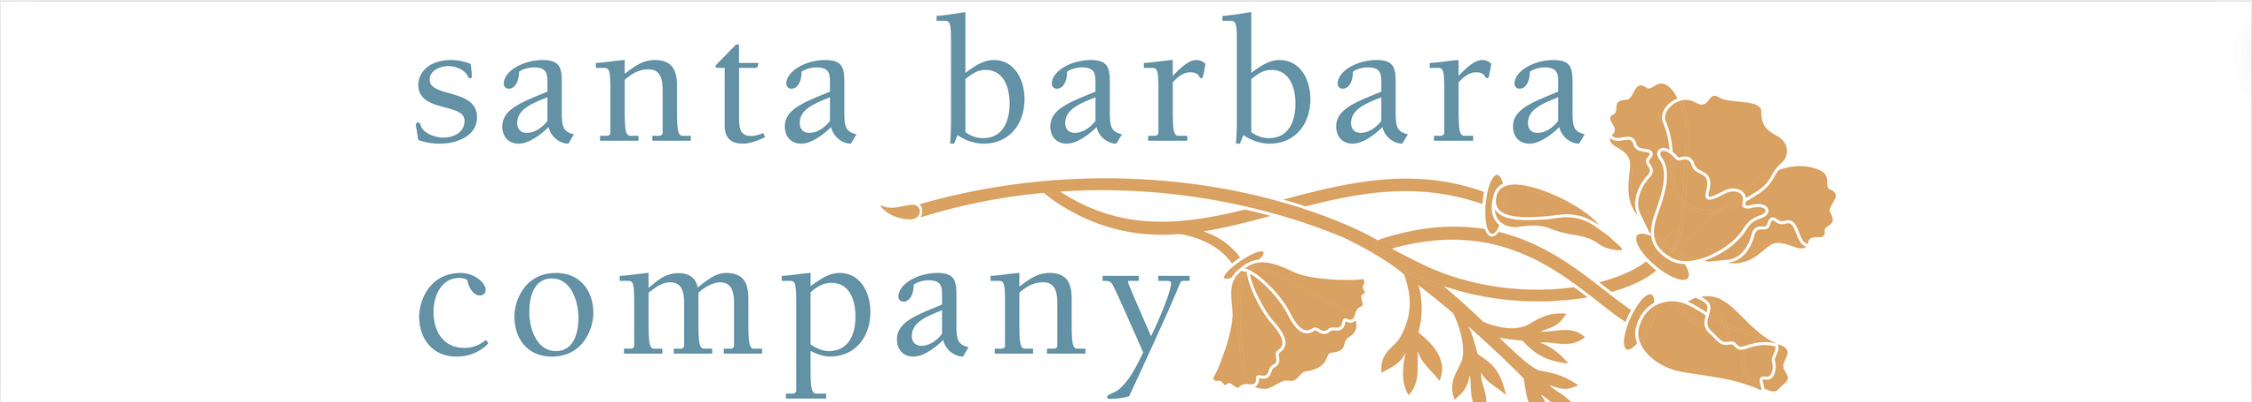 Santa Barbara Company logo